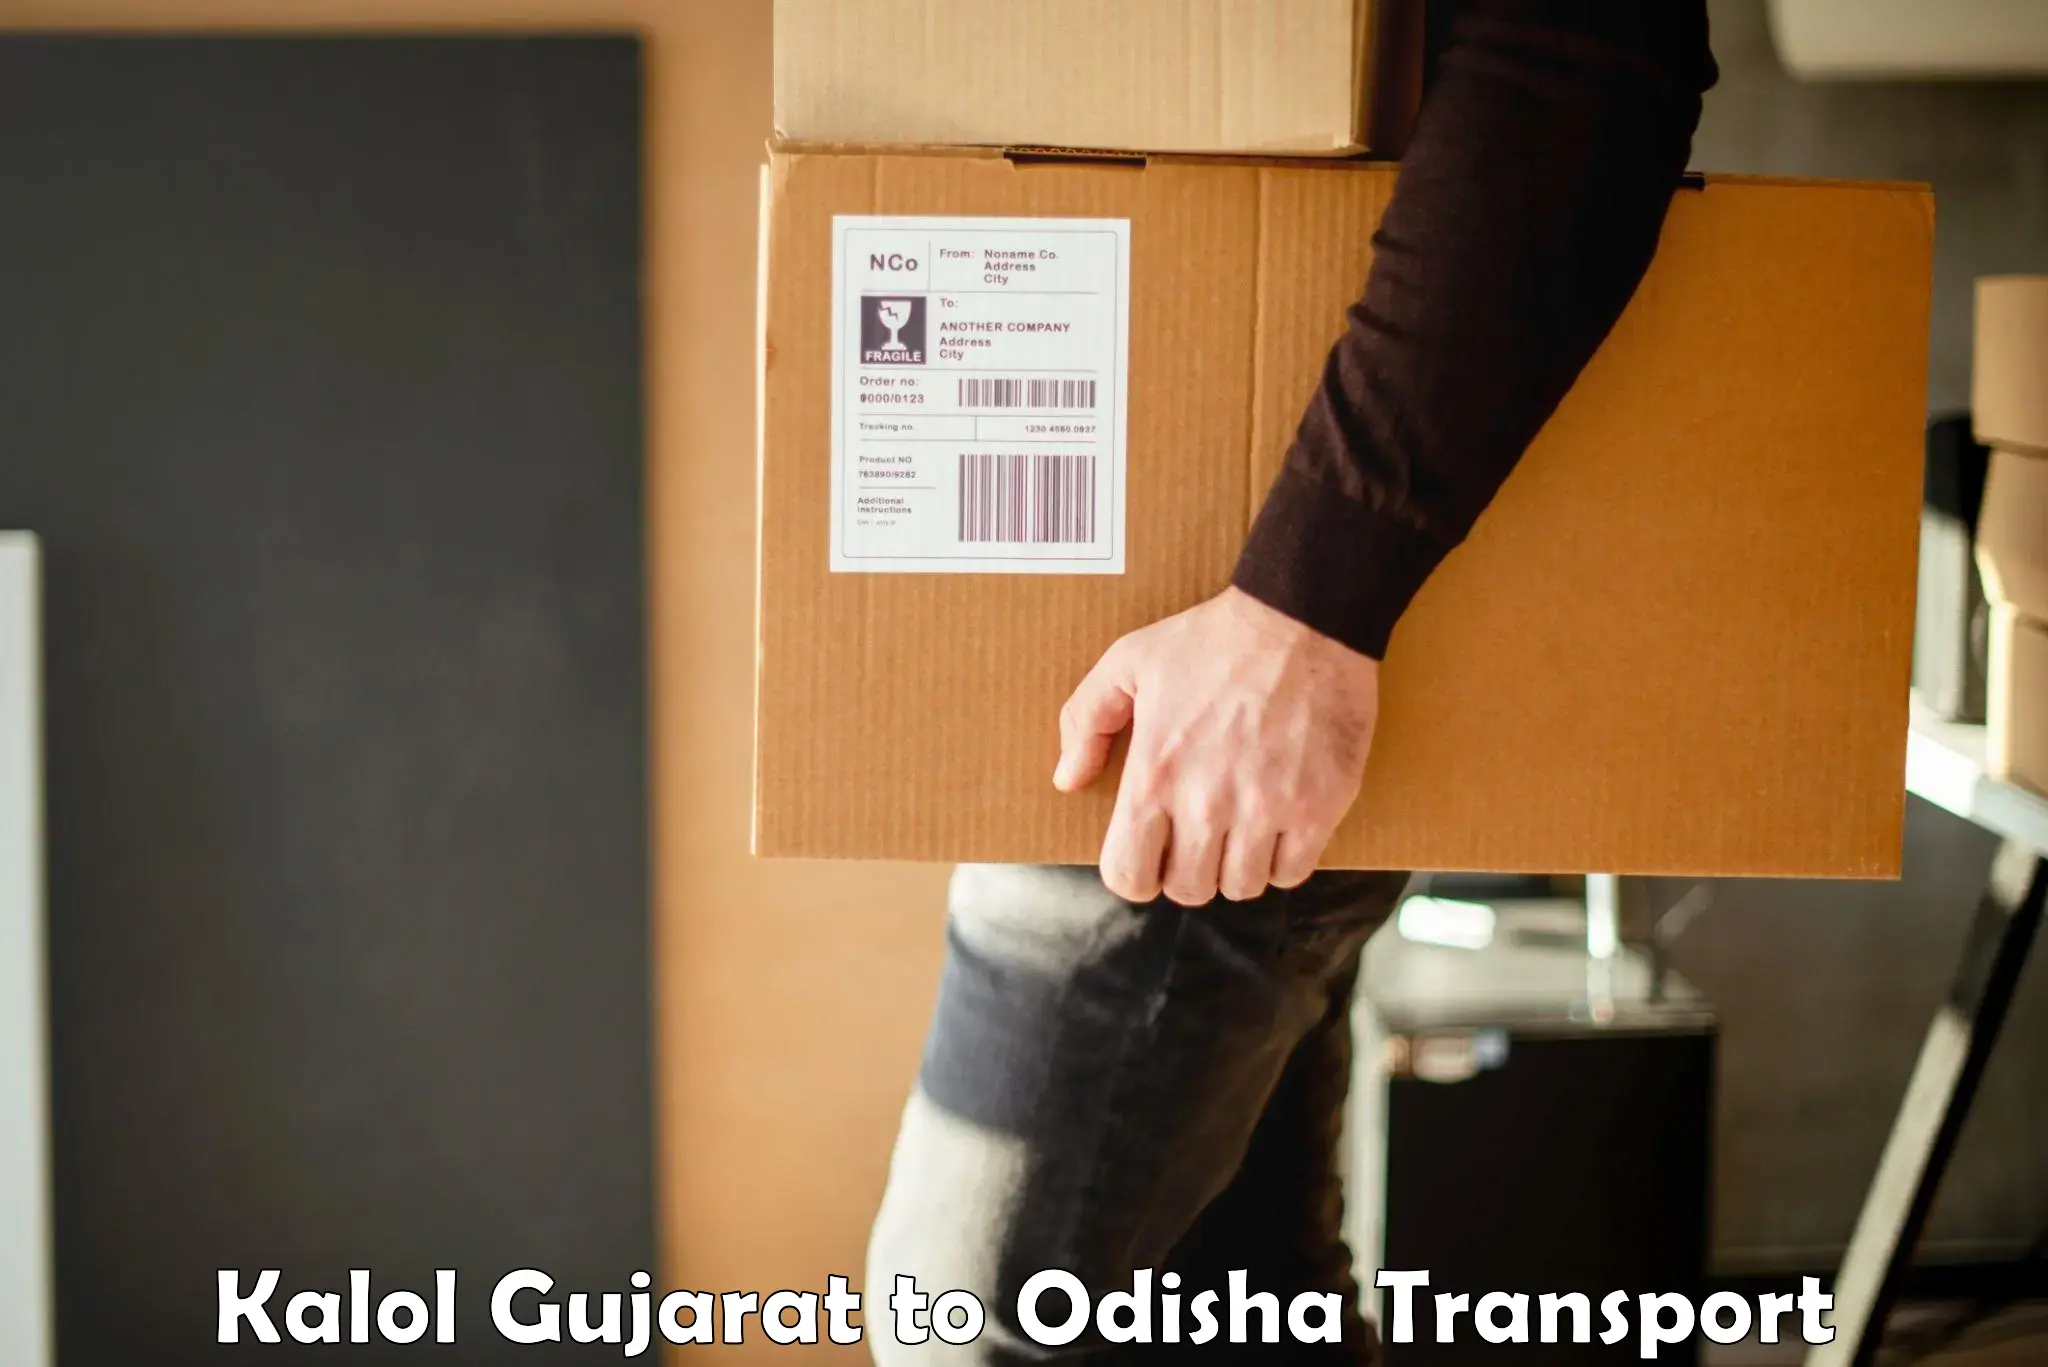 Furniture transport service Kalol Gujarat to Brajrajnagar